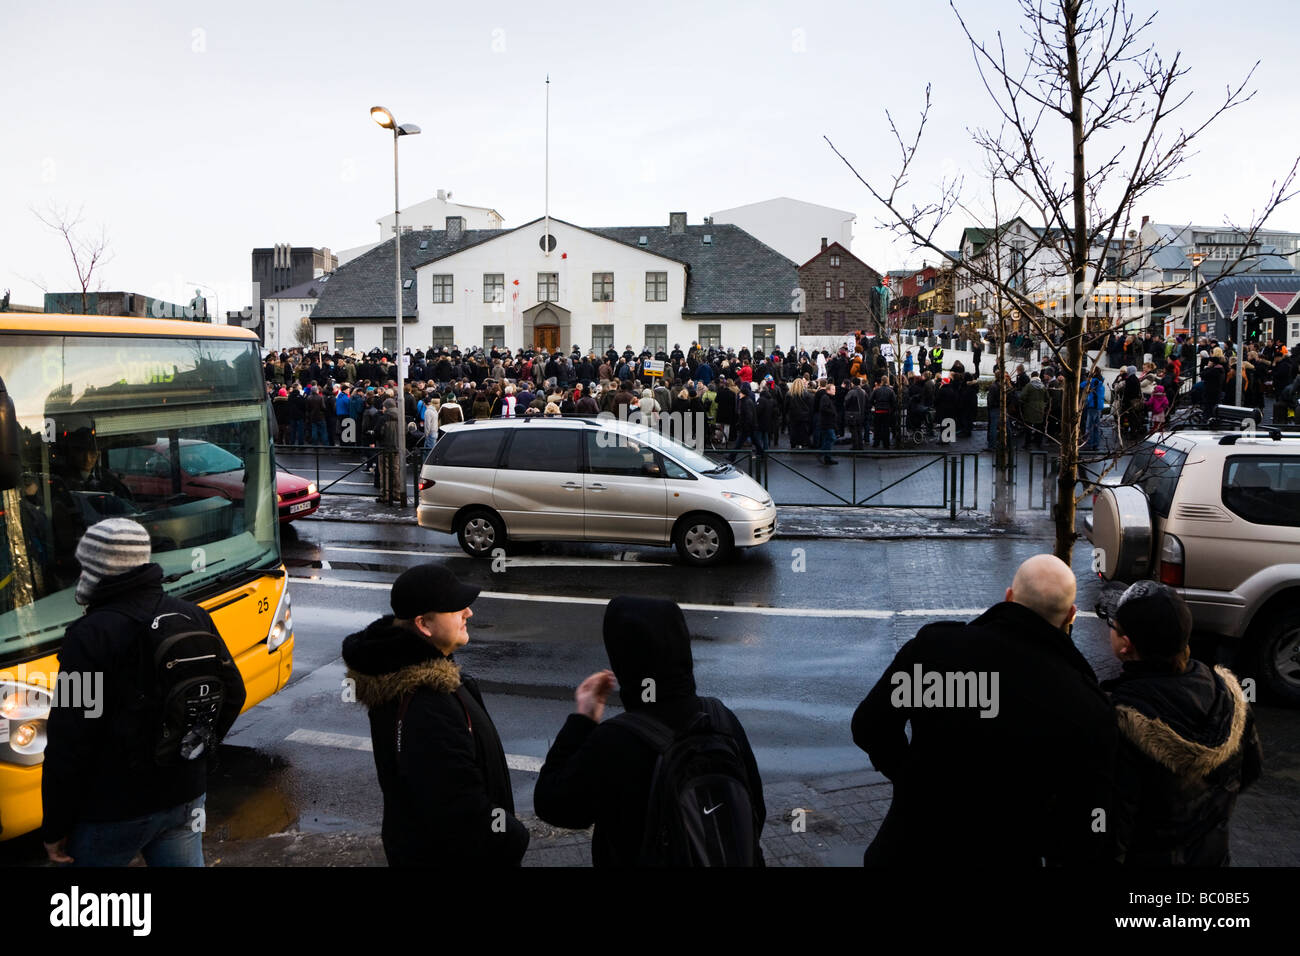 Protestations ont continué à l'extérieur des bureaux du gouvernement, le mercredi 21 01 2009. Crise financière, Reykjavik, Islande. Banque D'Images